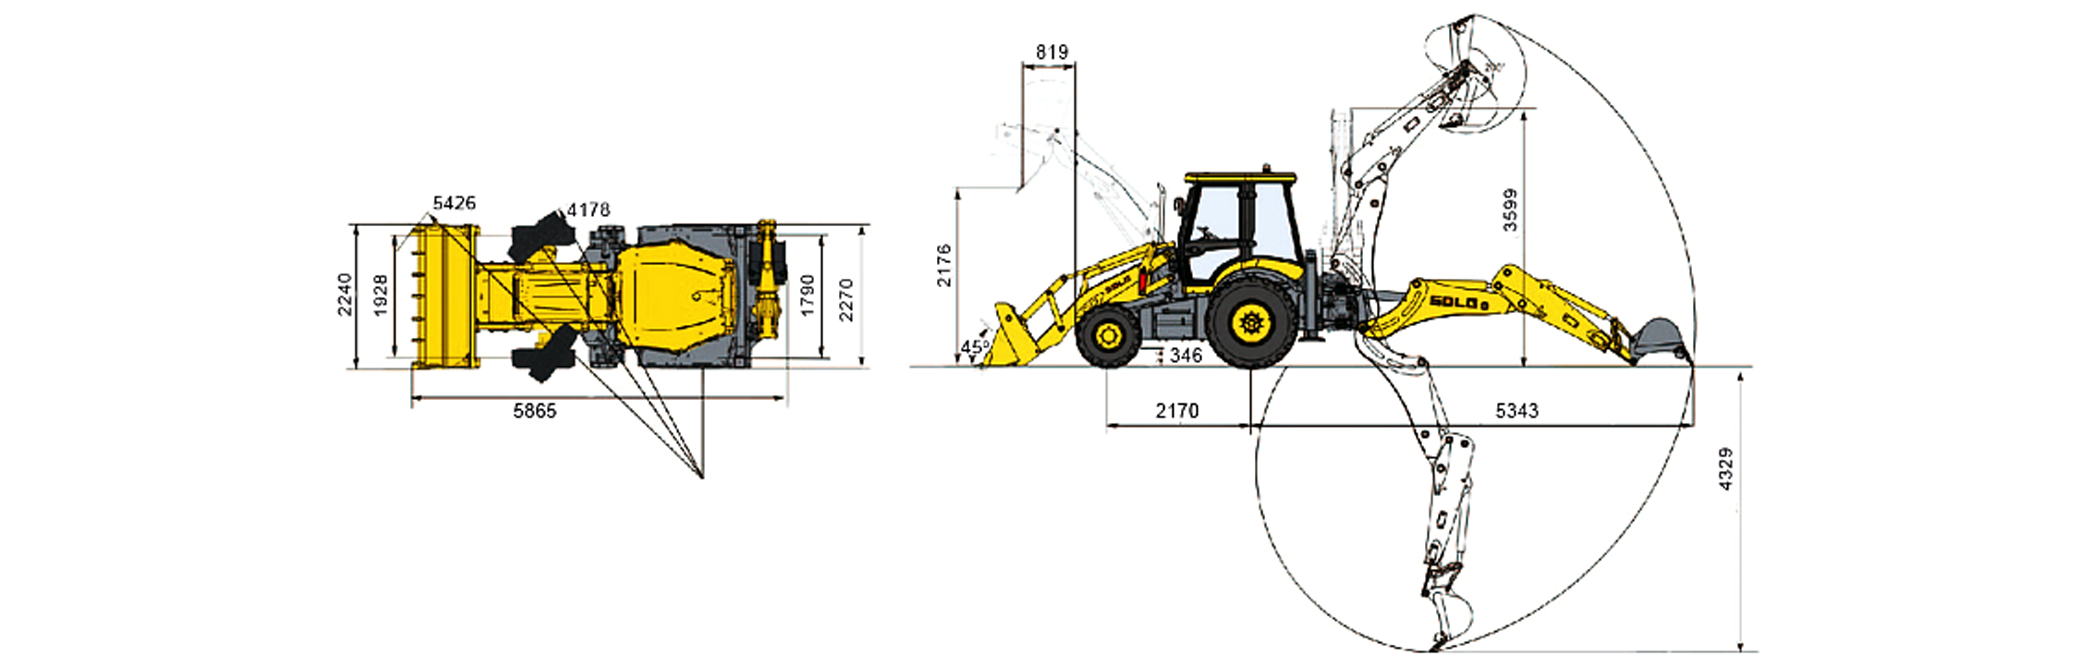 Обзор основных модификаций тракторов jcb